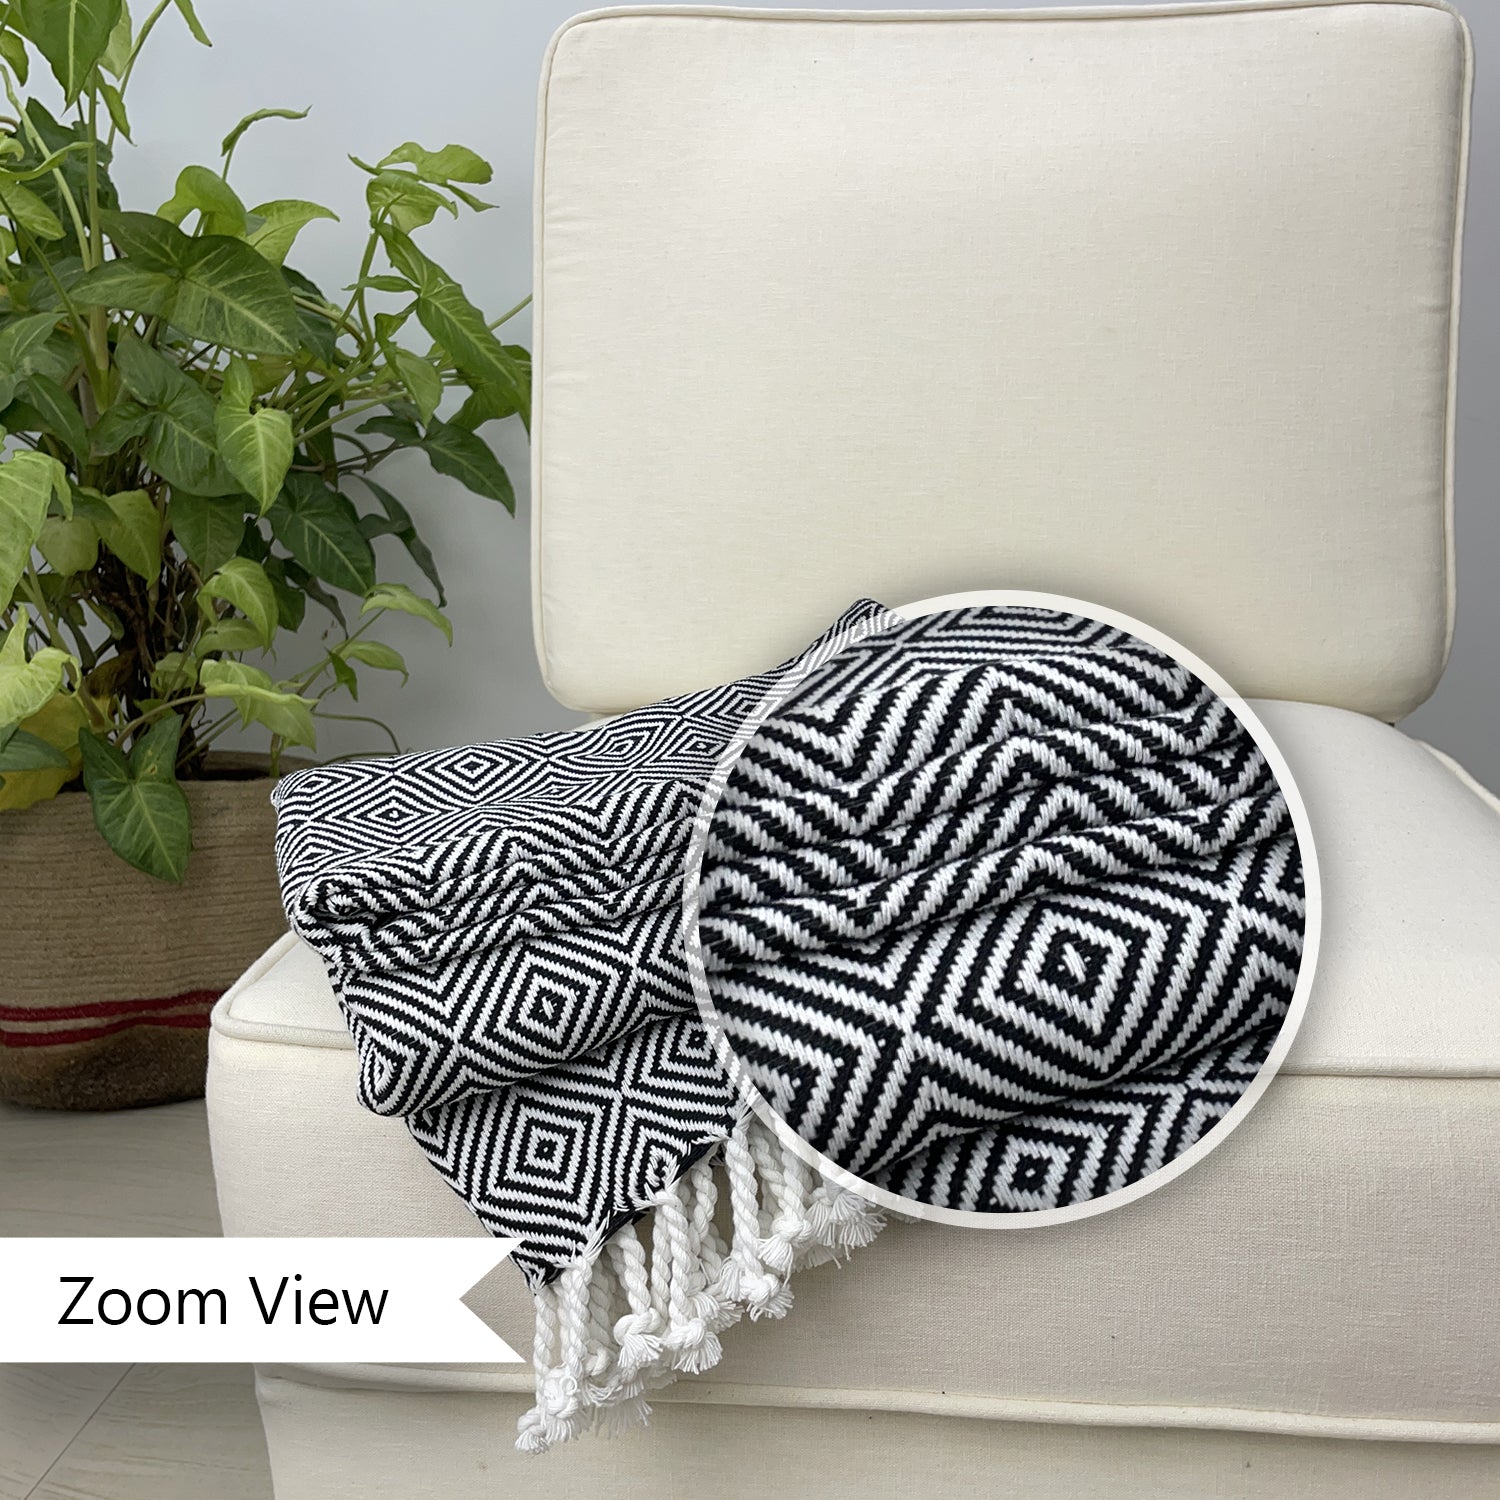 Avocado Linens Cotton Blend Sofa Throws - Black & White Diamond